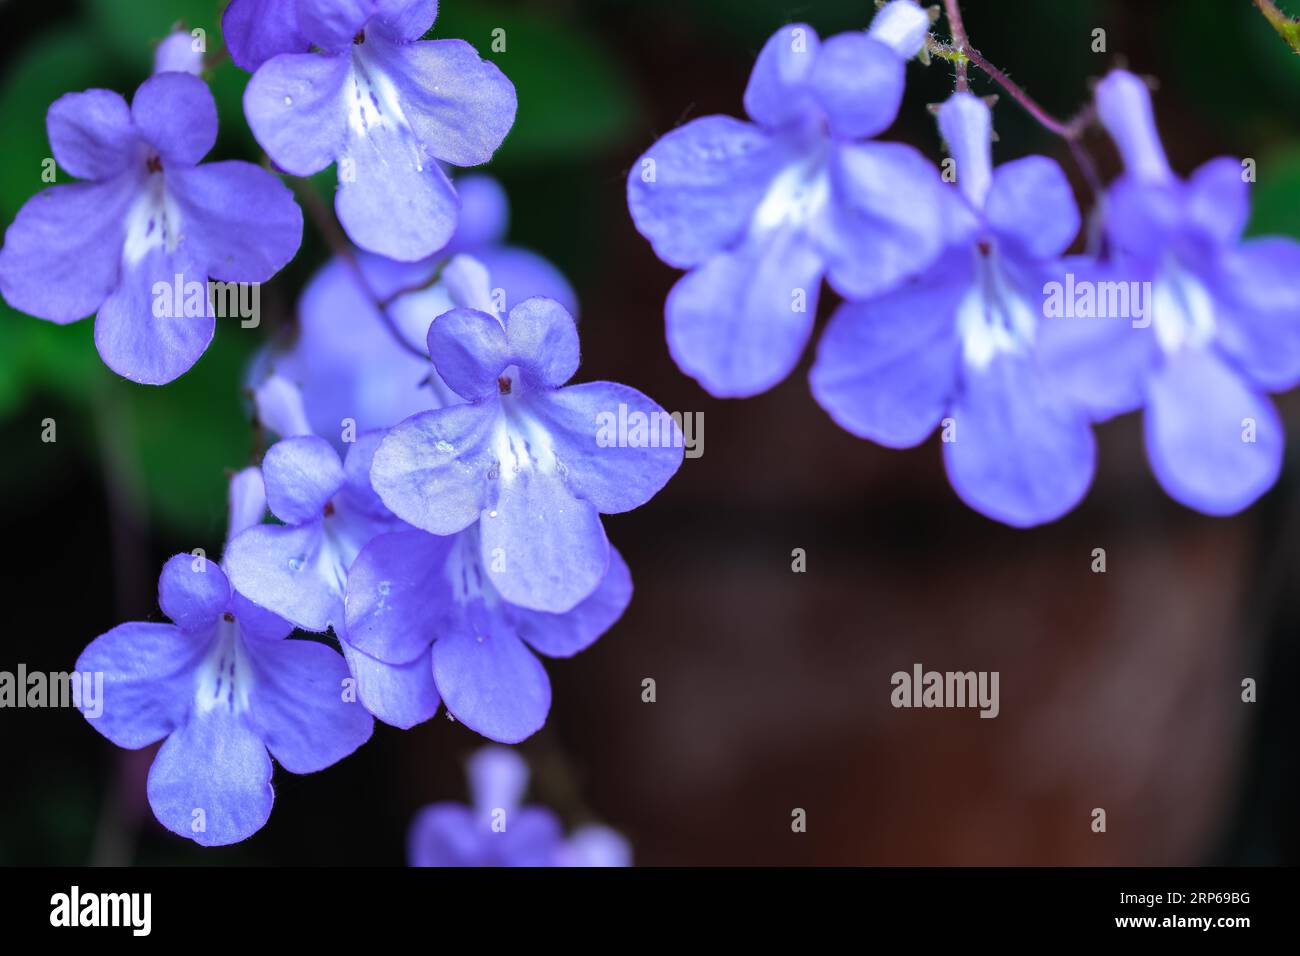 Falsches afrikanisches Violett oder Streptocarpus saxorum mit hellblauen Blüten auf dunkelgrünem Hintergrund, im Allgemeinen einfach als Streptocarpus oder Stre bezeichnet Stockfoto